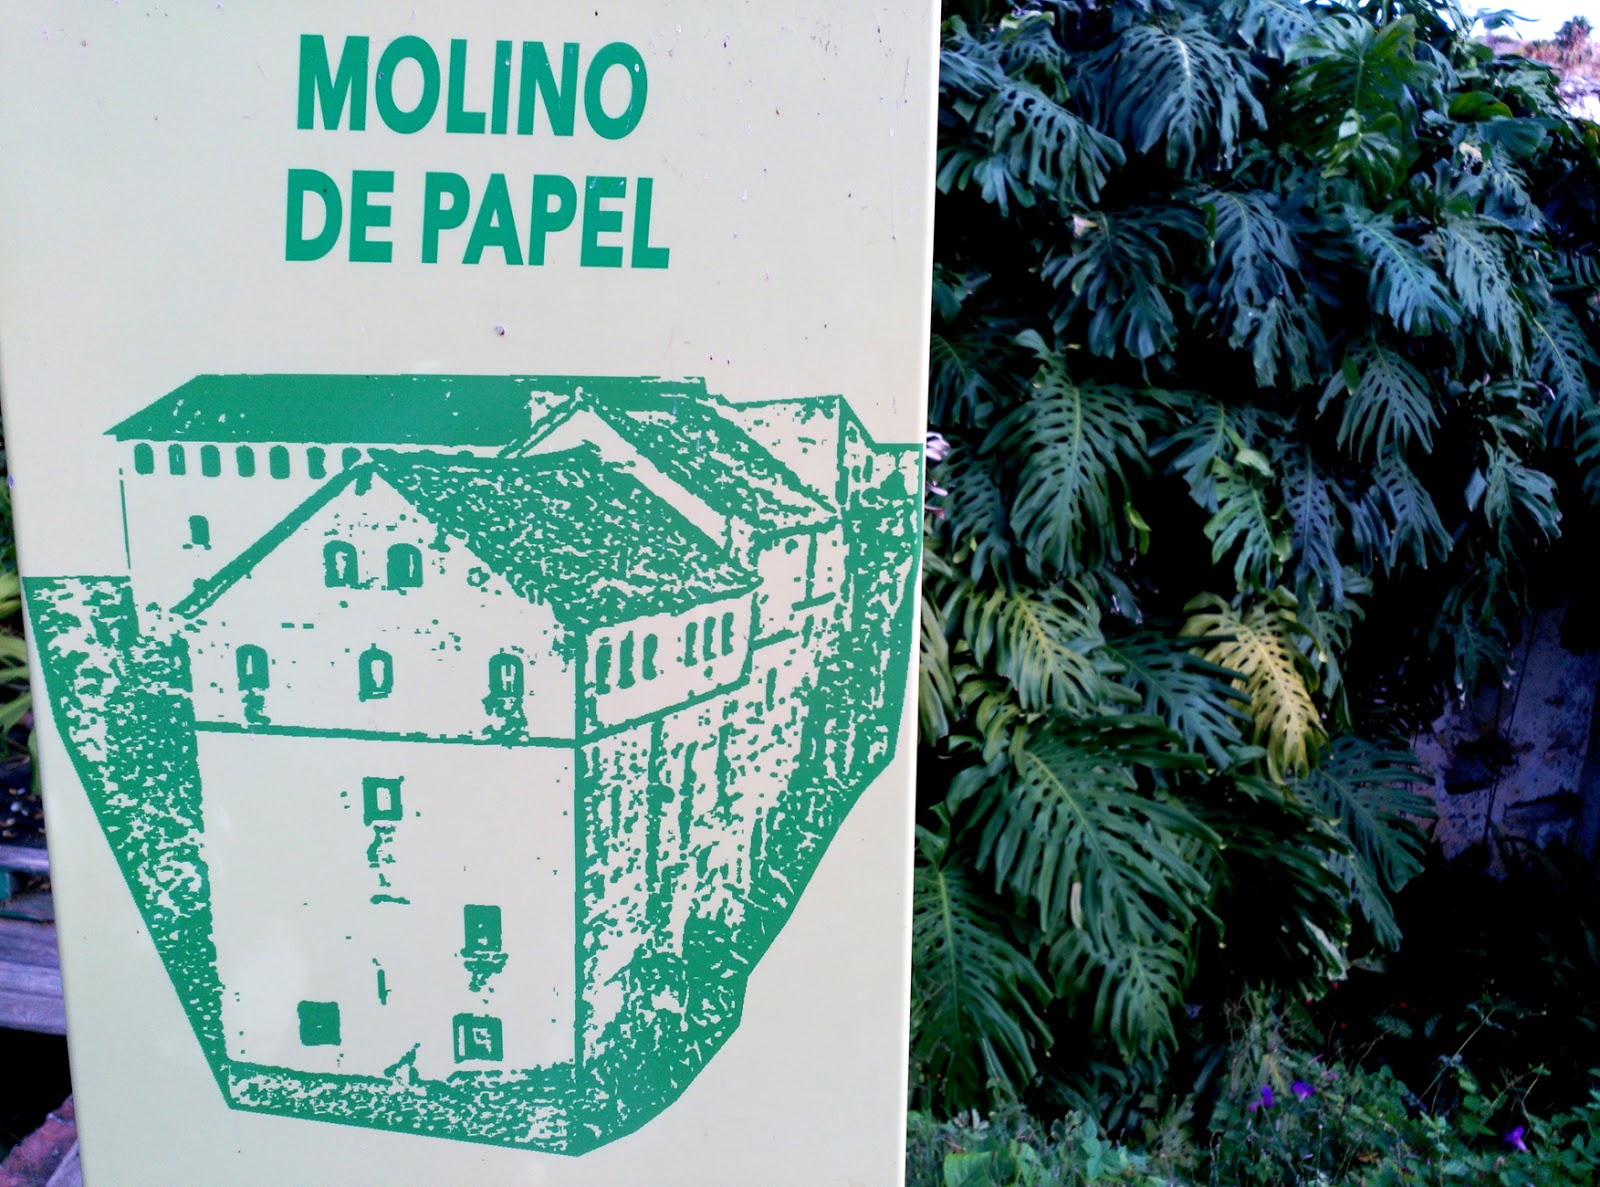 Papel artesanal: el molino de Capellades (Barcelona) - Labois Blog